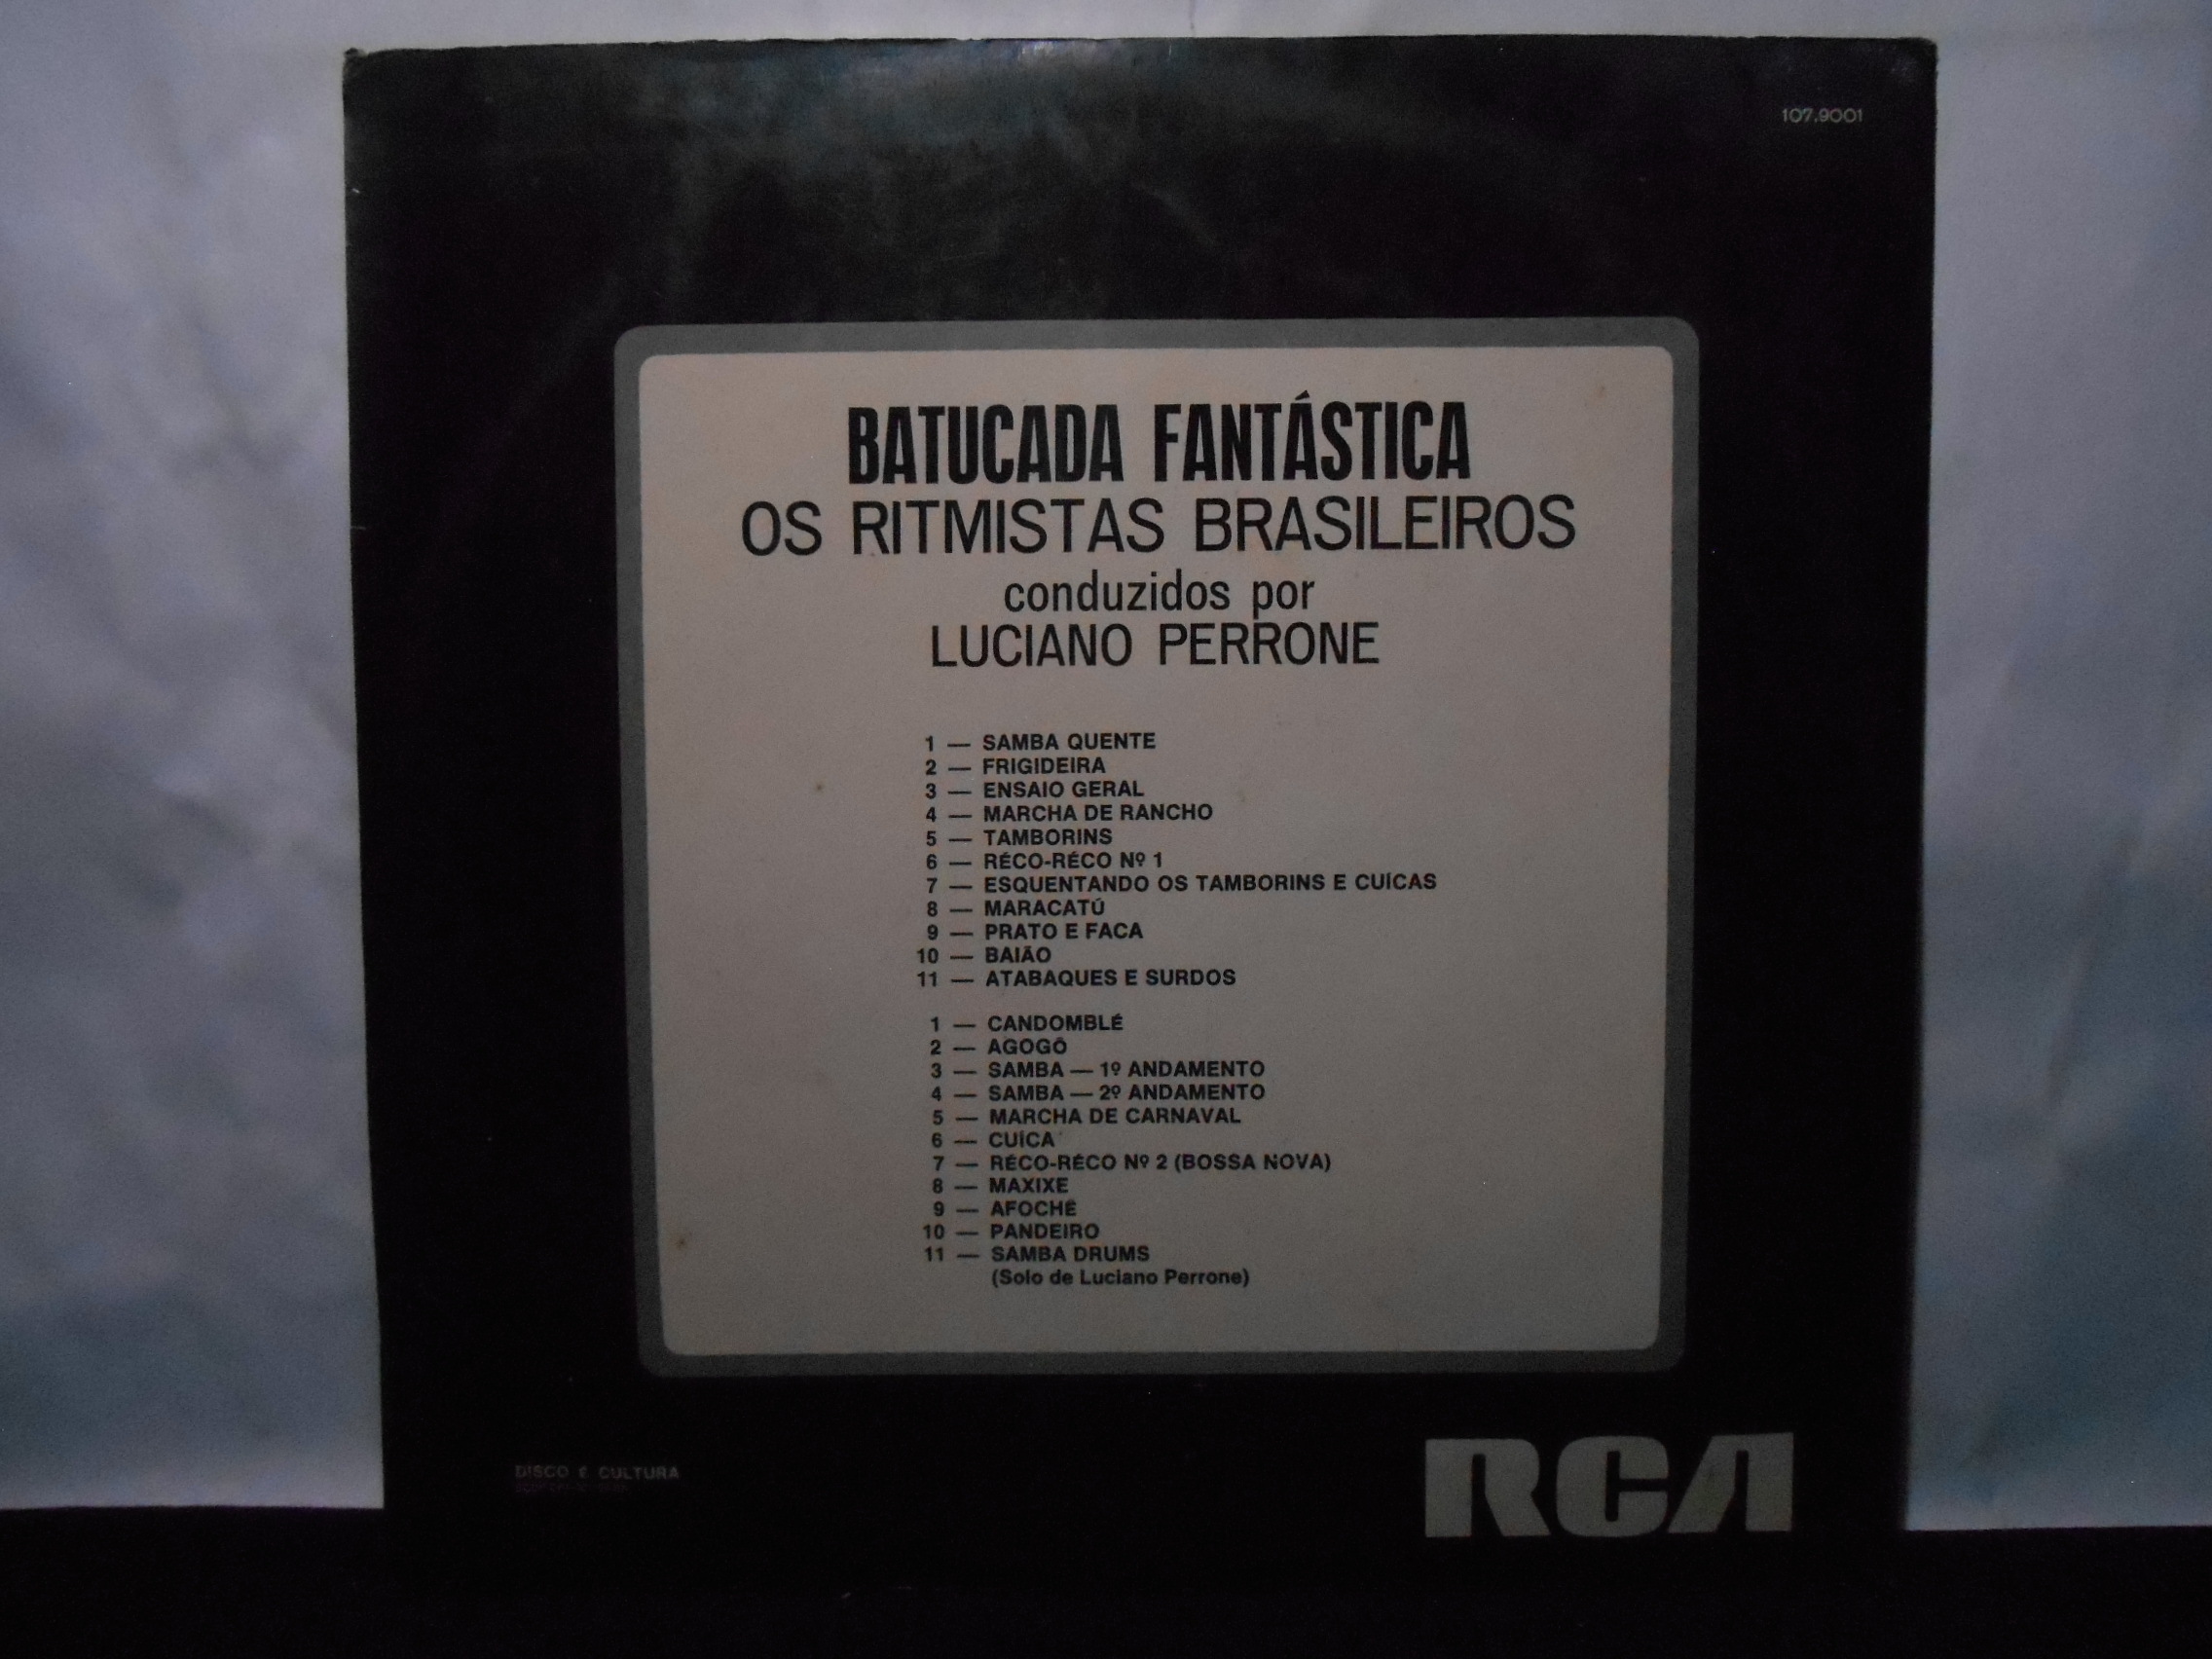 VINIL - Os Ritmistas Brasileiros Conduzidos Por Luciano Perrone - Batucada Fantástica